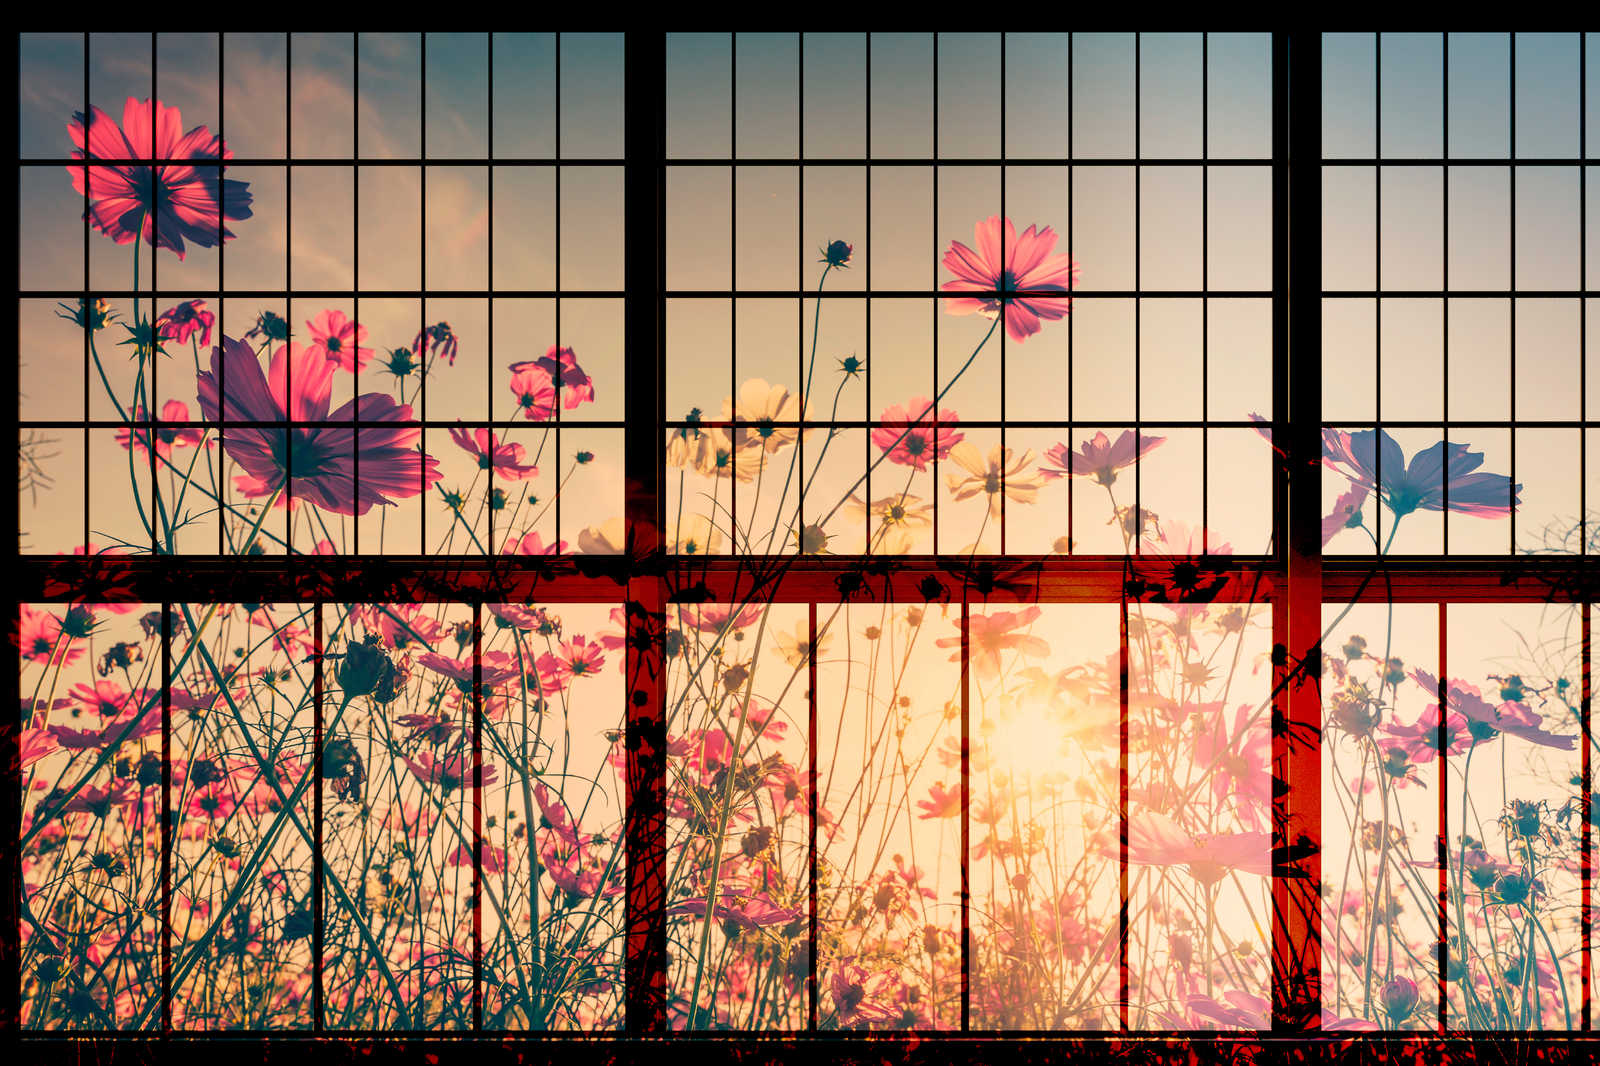             Meadow 1 - Sprossenfenster Leinwandbild mit Blumenwiese – 1,20 m x 0,80 m
        